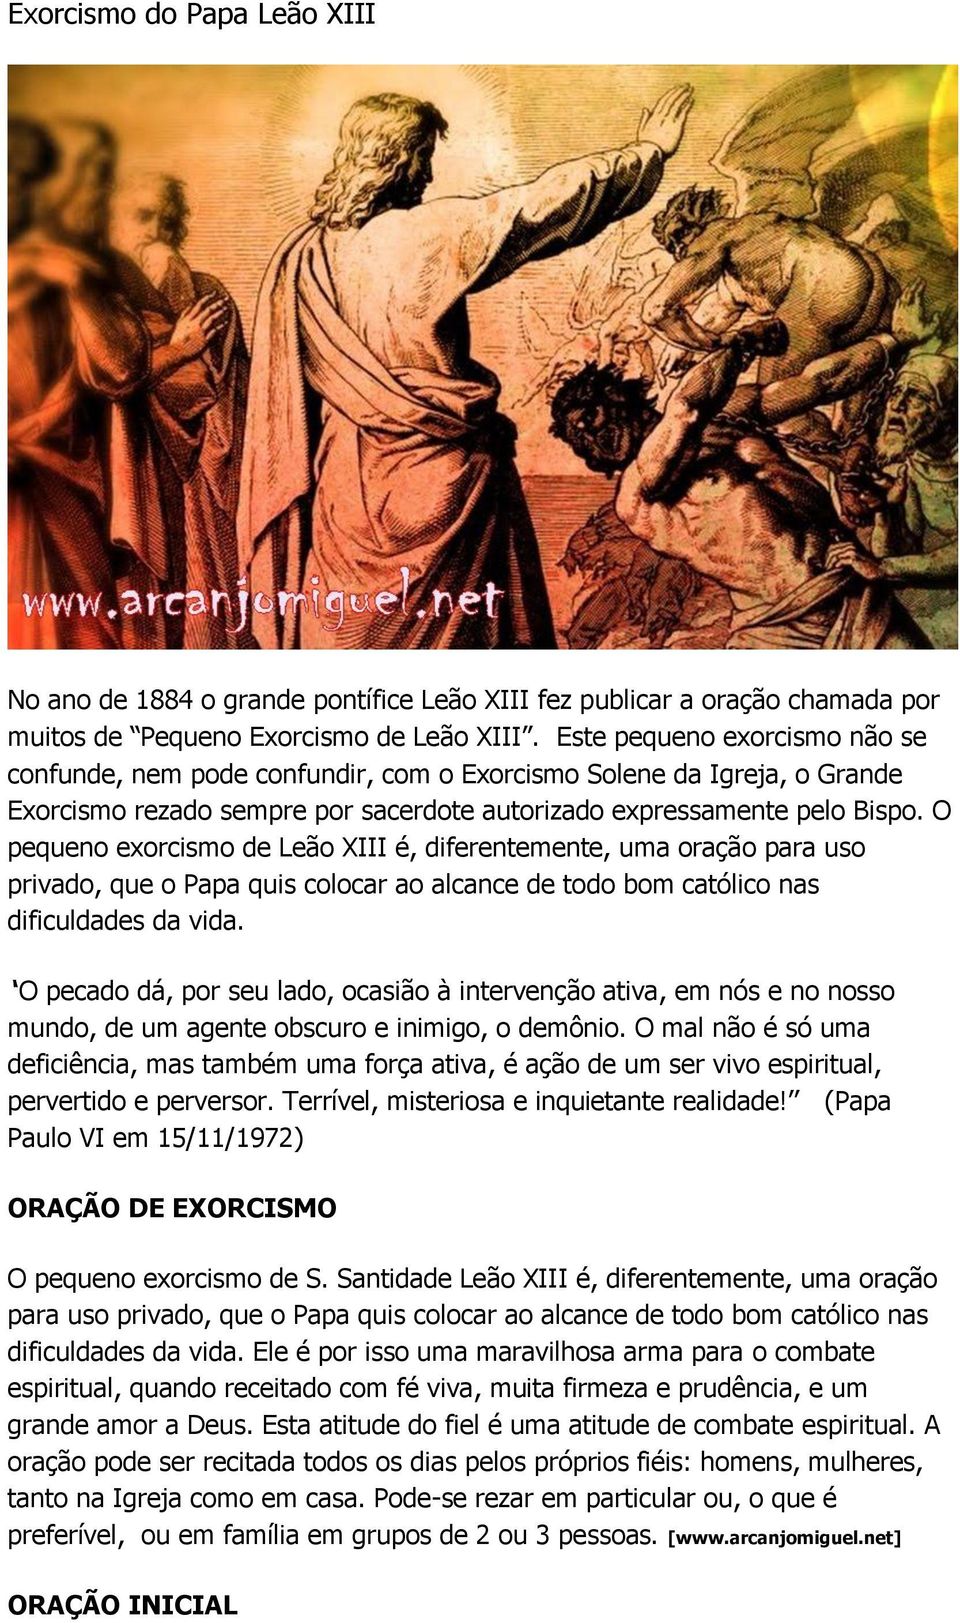 Exorcismo do Papa Leão XIII - PDF Free Download